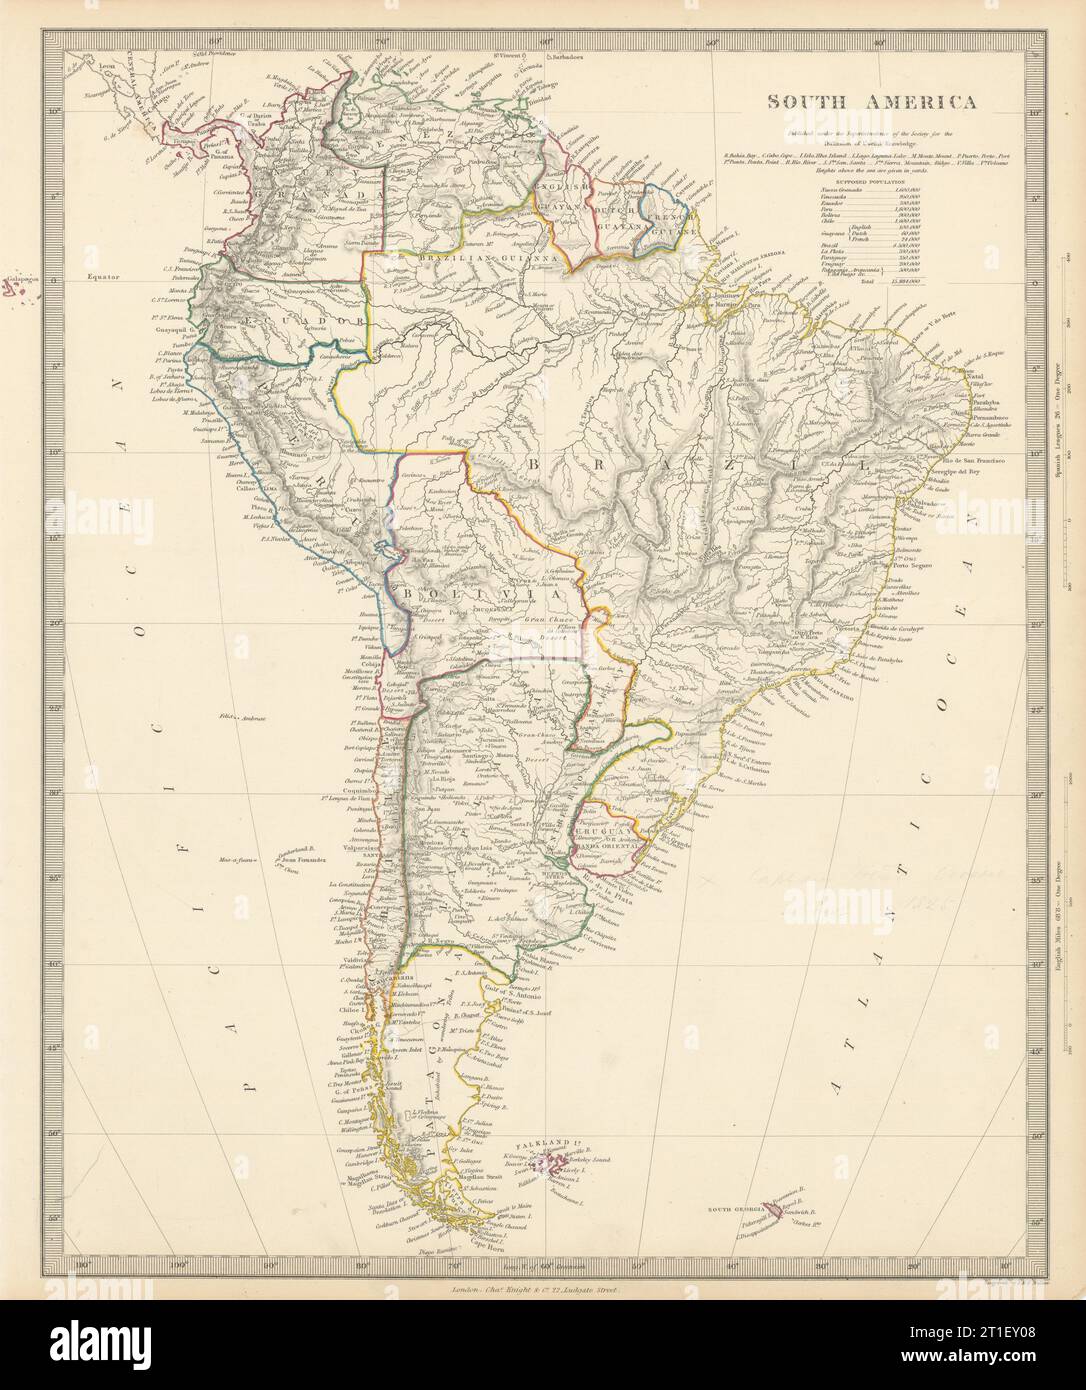 SUD AMERICA. Brasile Cile Perù Bolivia Patagonia la Plata. Vecchia mappa SDUK 1844 Foto Stock